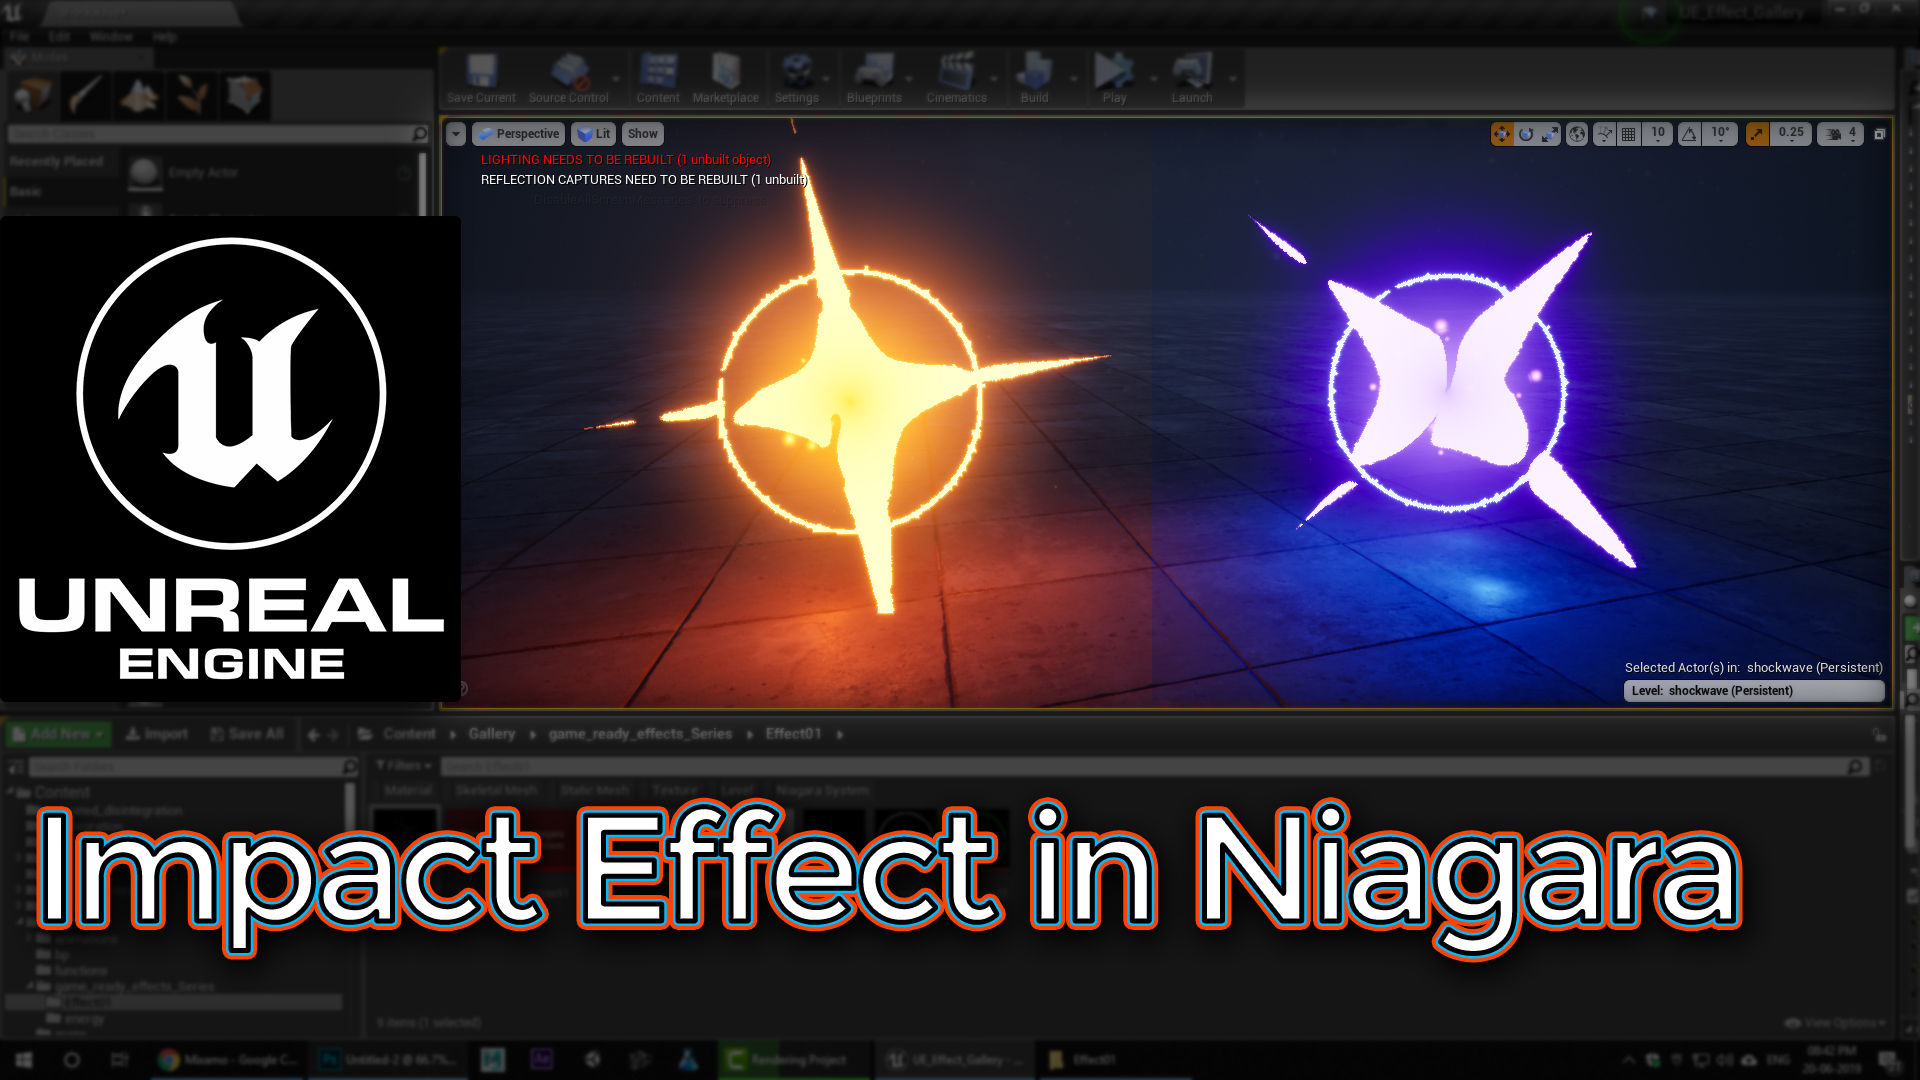 Unreal Engine Impact Effect in Niagara